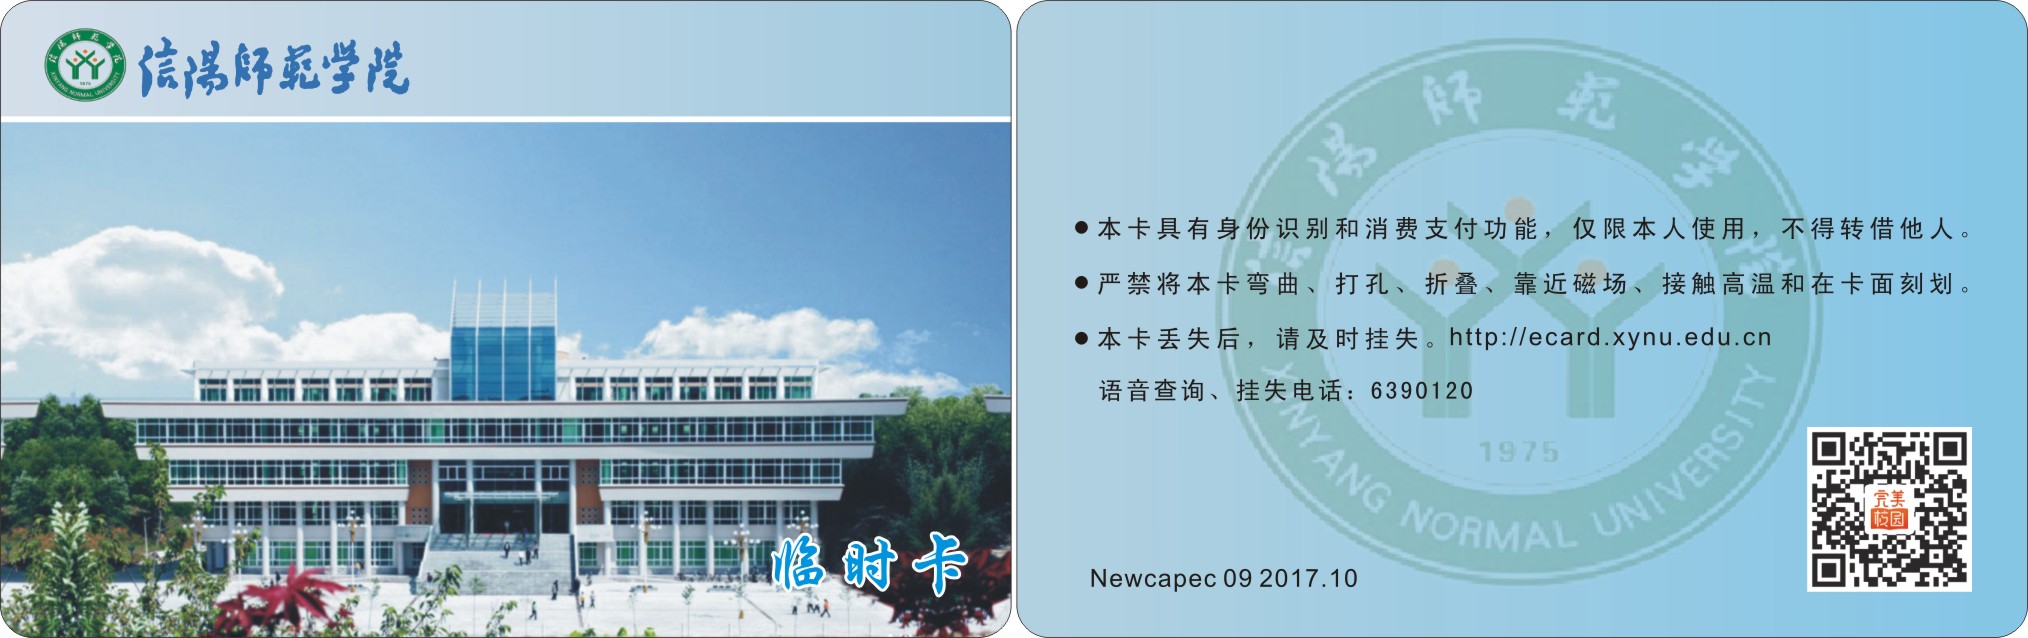 信阳师范学院(临时卡) 171012(1).jpg